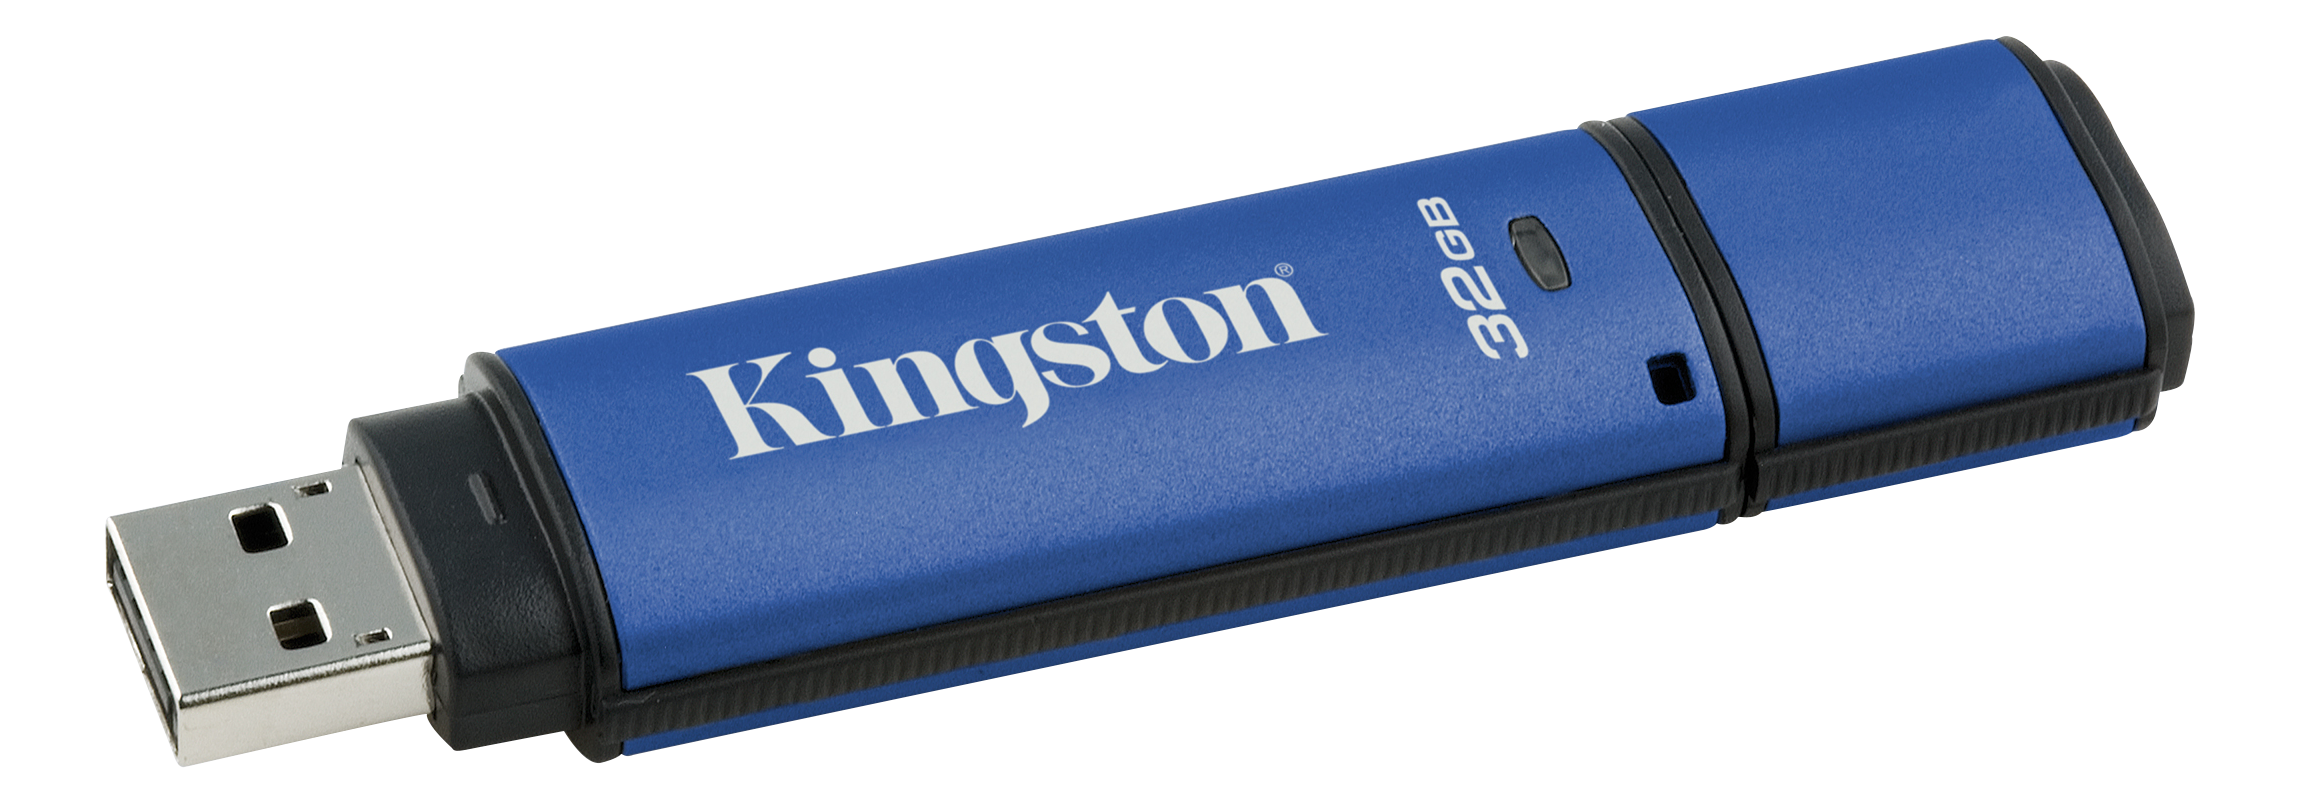 Kingston 32GB USB 3.0 DTVP30, 256bit AES Encrypted FIPS 197